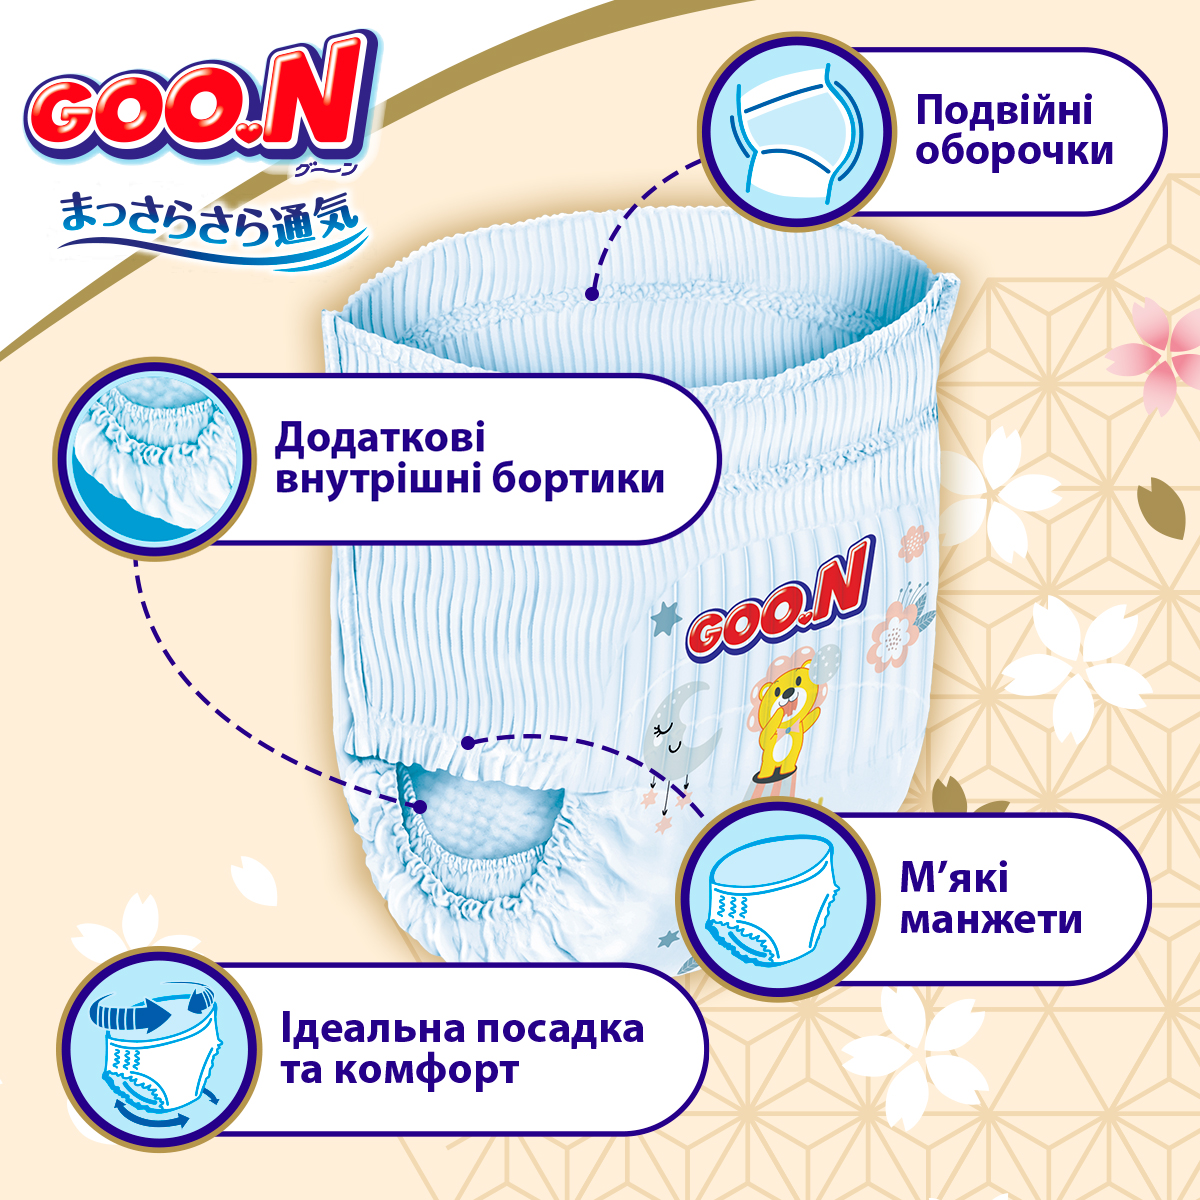 Трусики-підгузки Goo.N Premium Soft розмір 6 (XXL) 15-25 кг доу-пак 60 шт. - фото 5